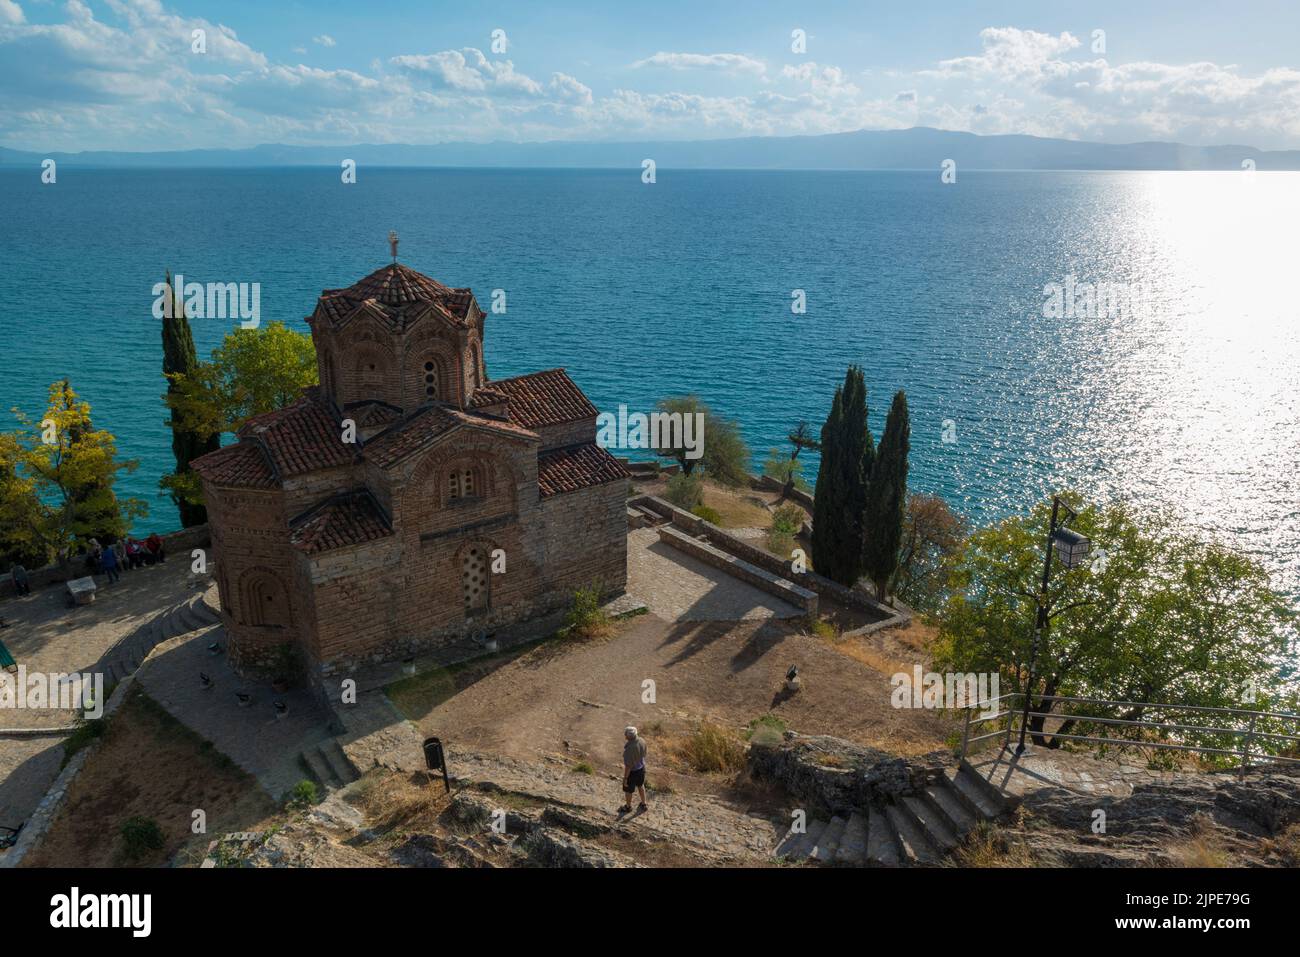 Eglise orthodoxe Saint John à Kaneo, située sur une falaise, vue d'en haut, surplombant le lac Ohrid, Macédoine du Nord Banque D'Images